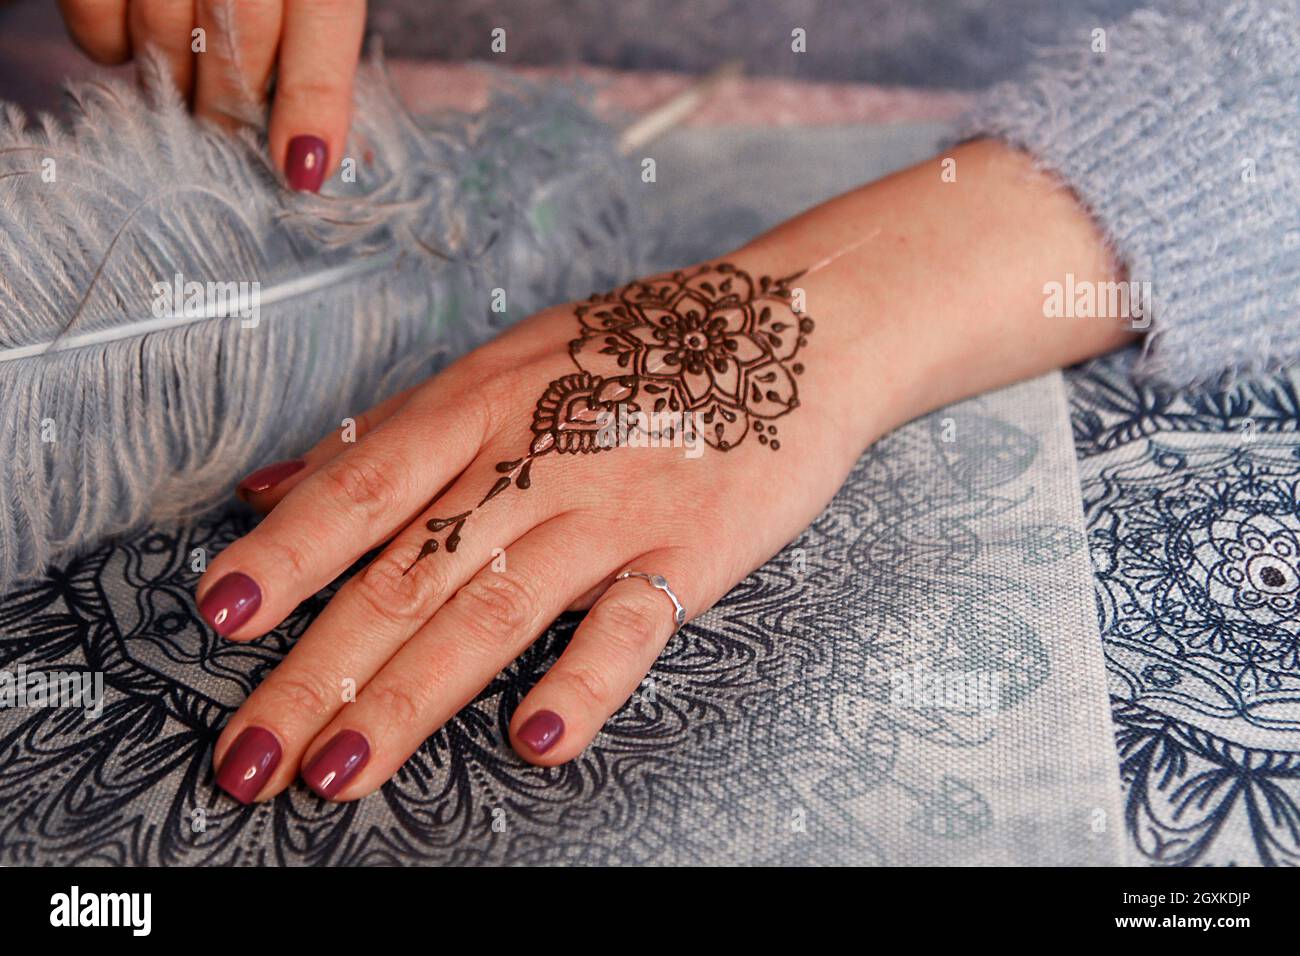 Tatuaje árabe fotografías e imágenes de alta resolución - Página 3 - Alamy